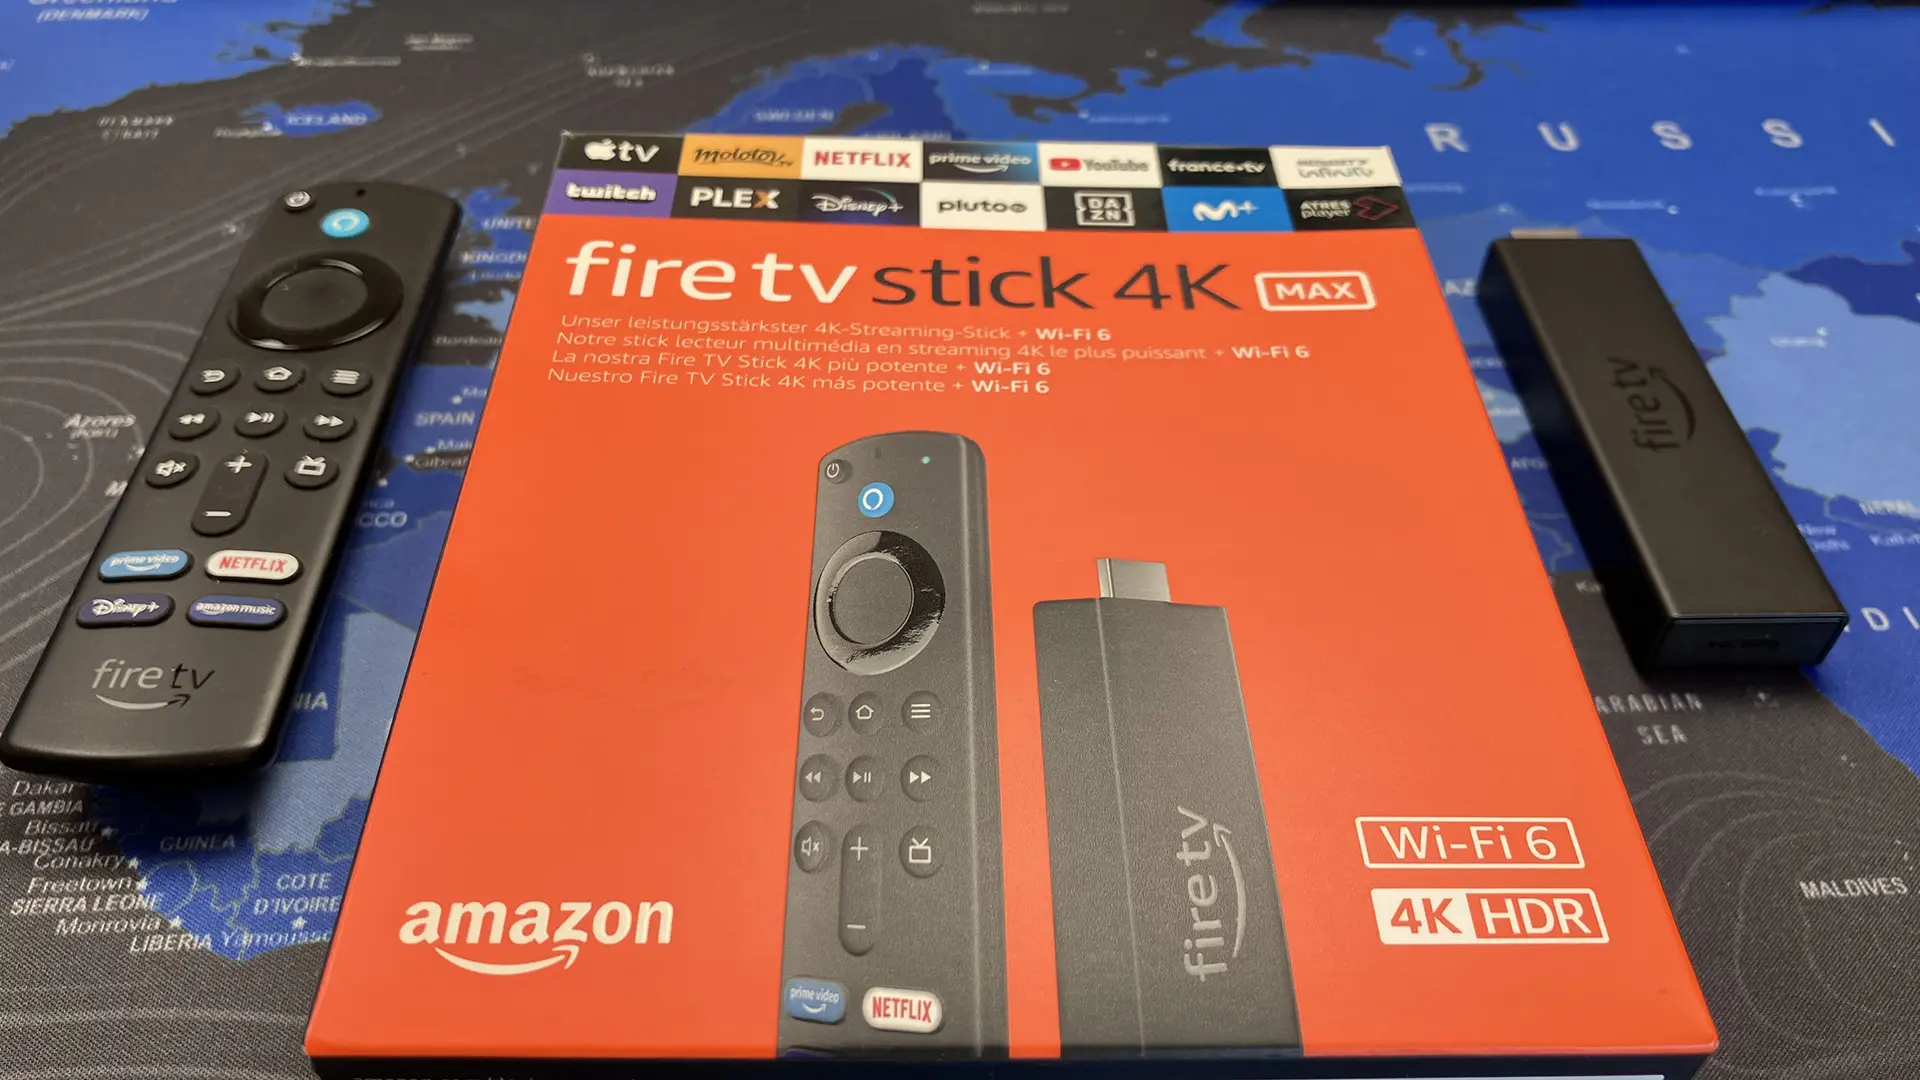 Amplía las posibilidades de tu Fire TV Stick 4K Max con estos accesorios y  complementos esenciales